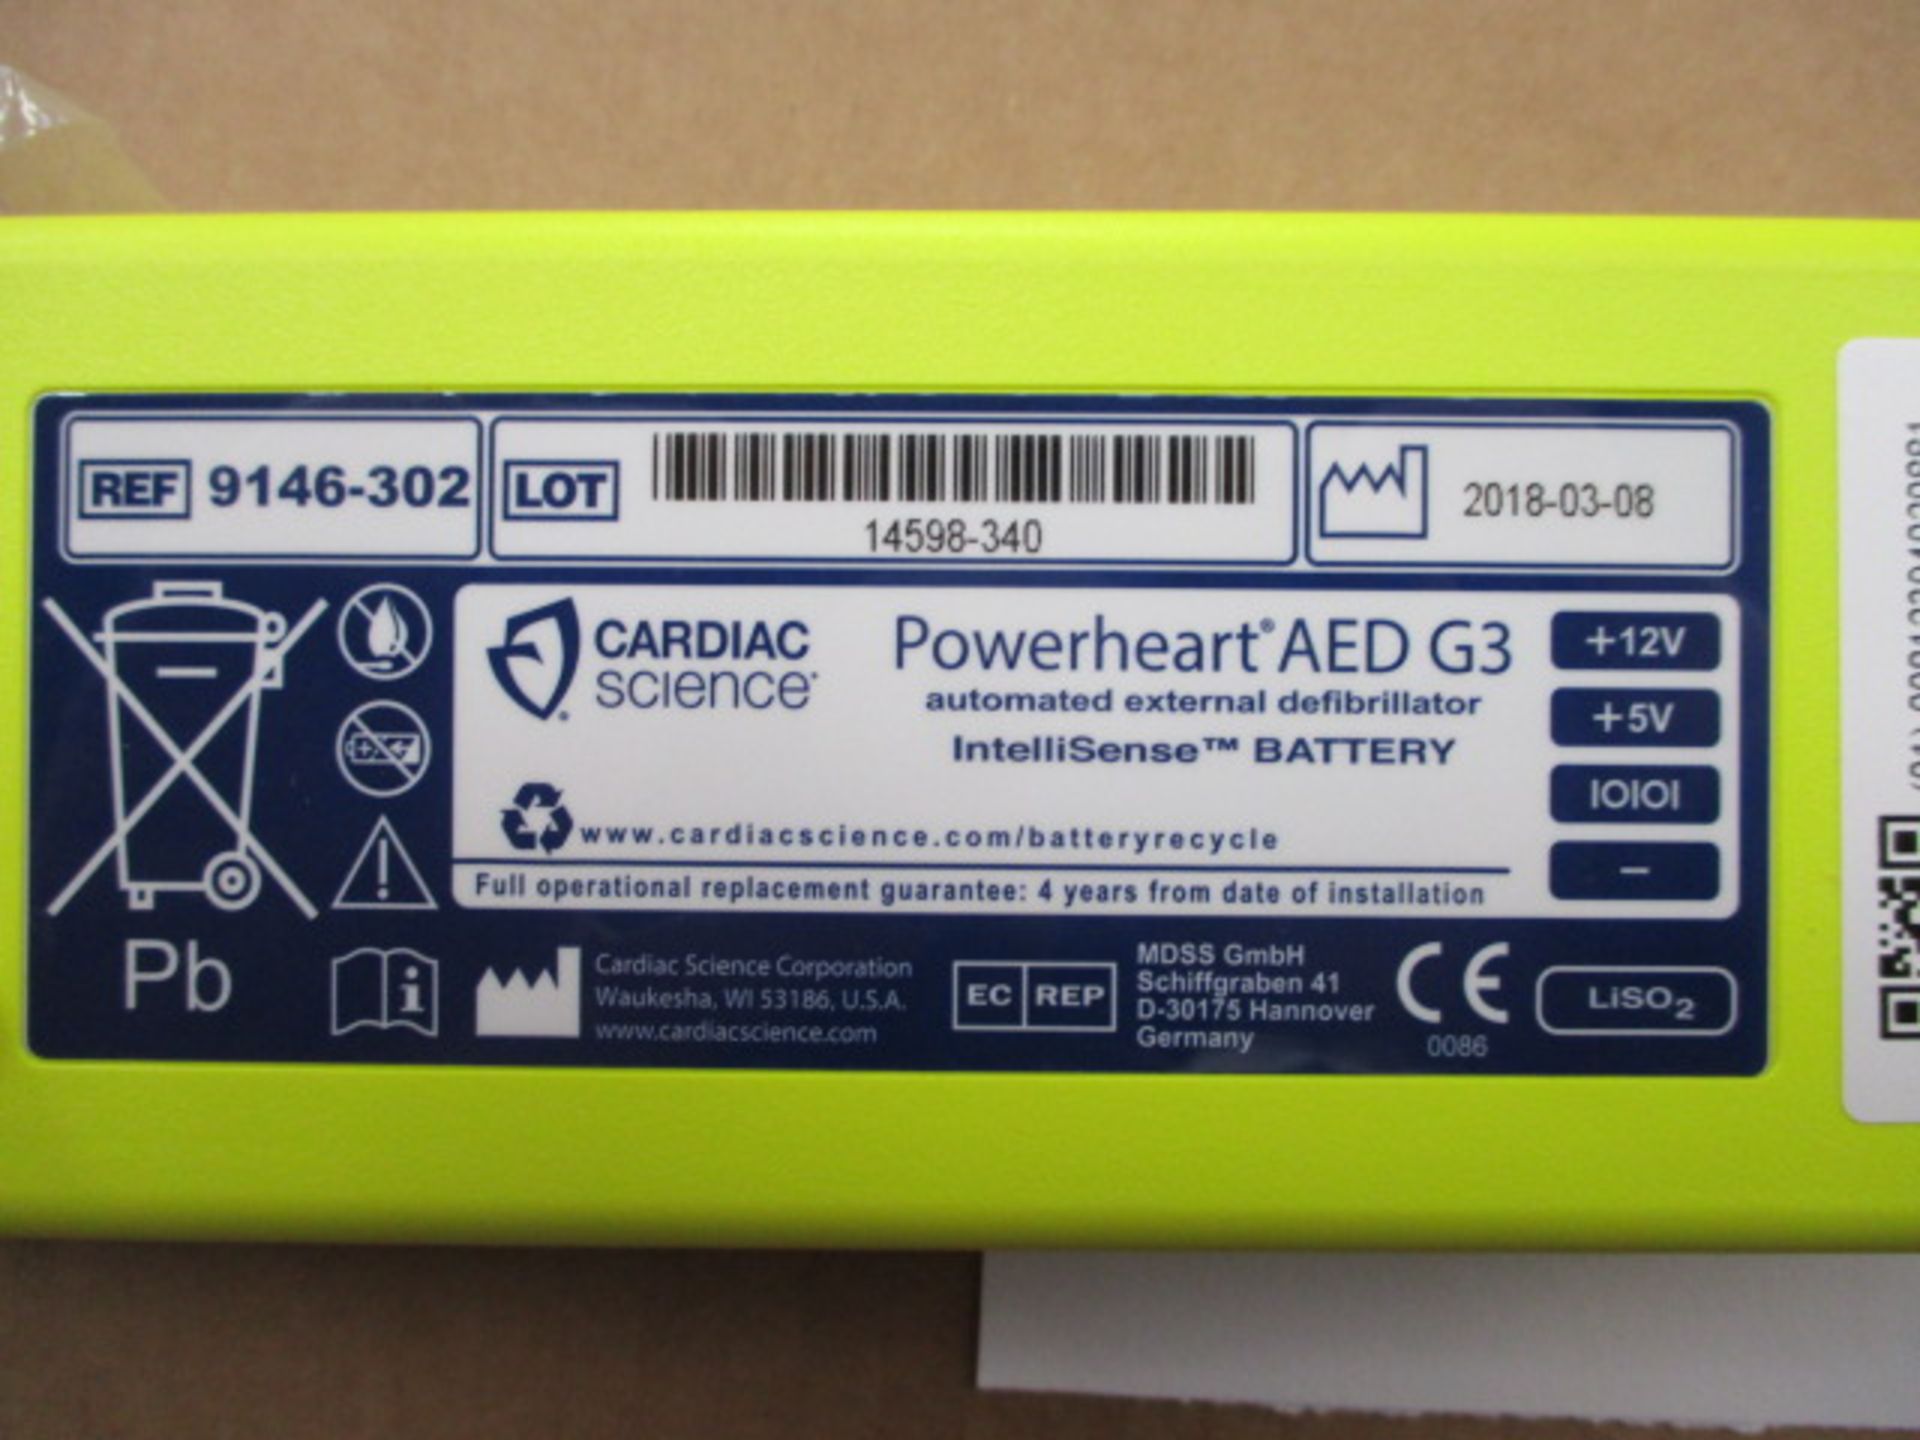 Defibrilator battery - Image 2 of 3